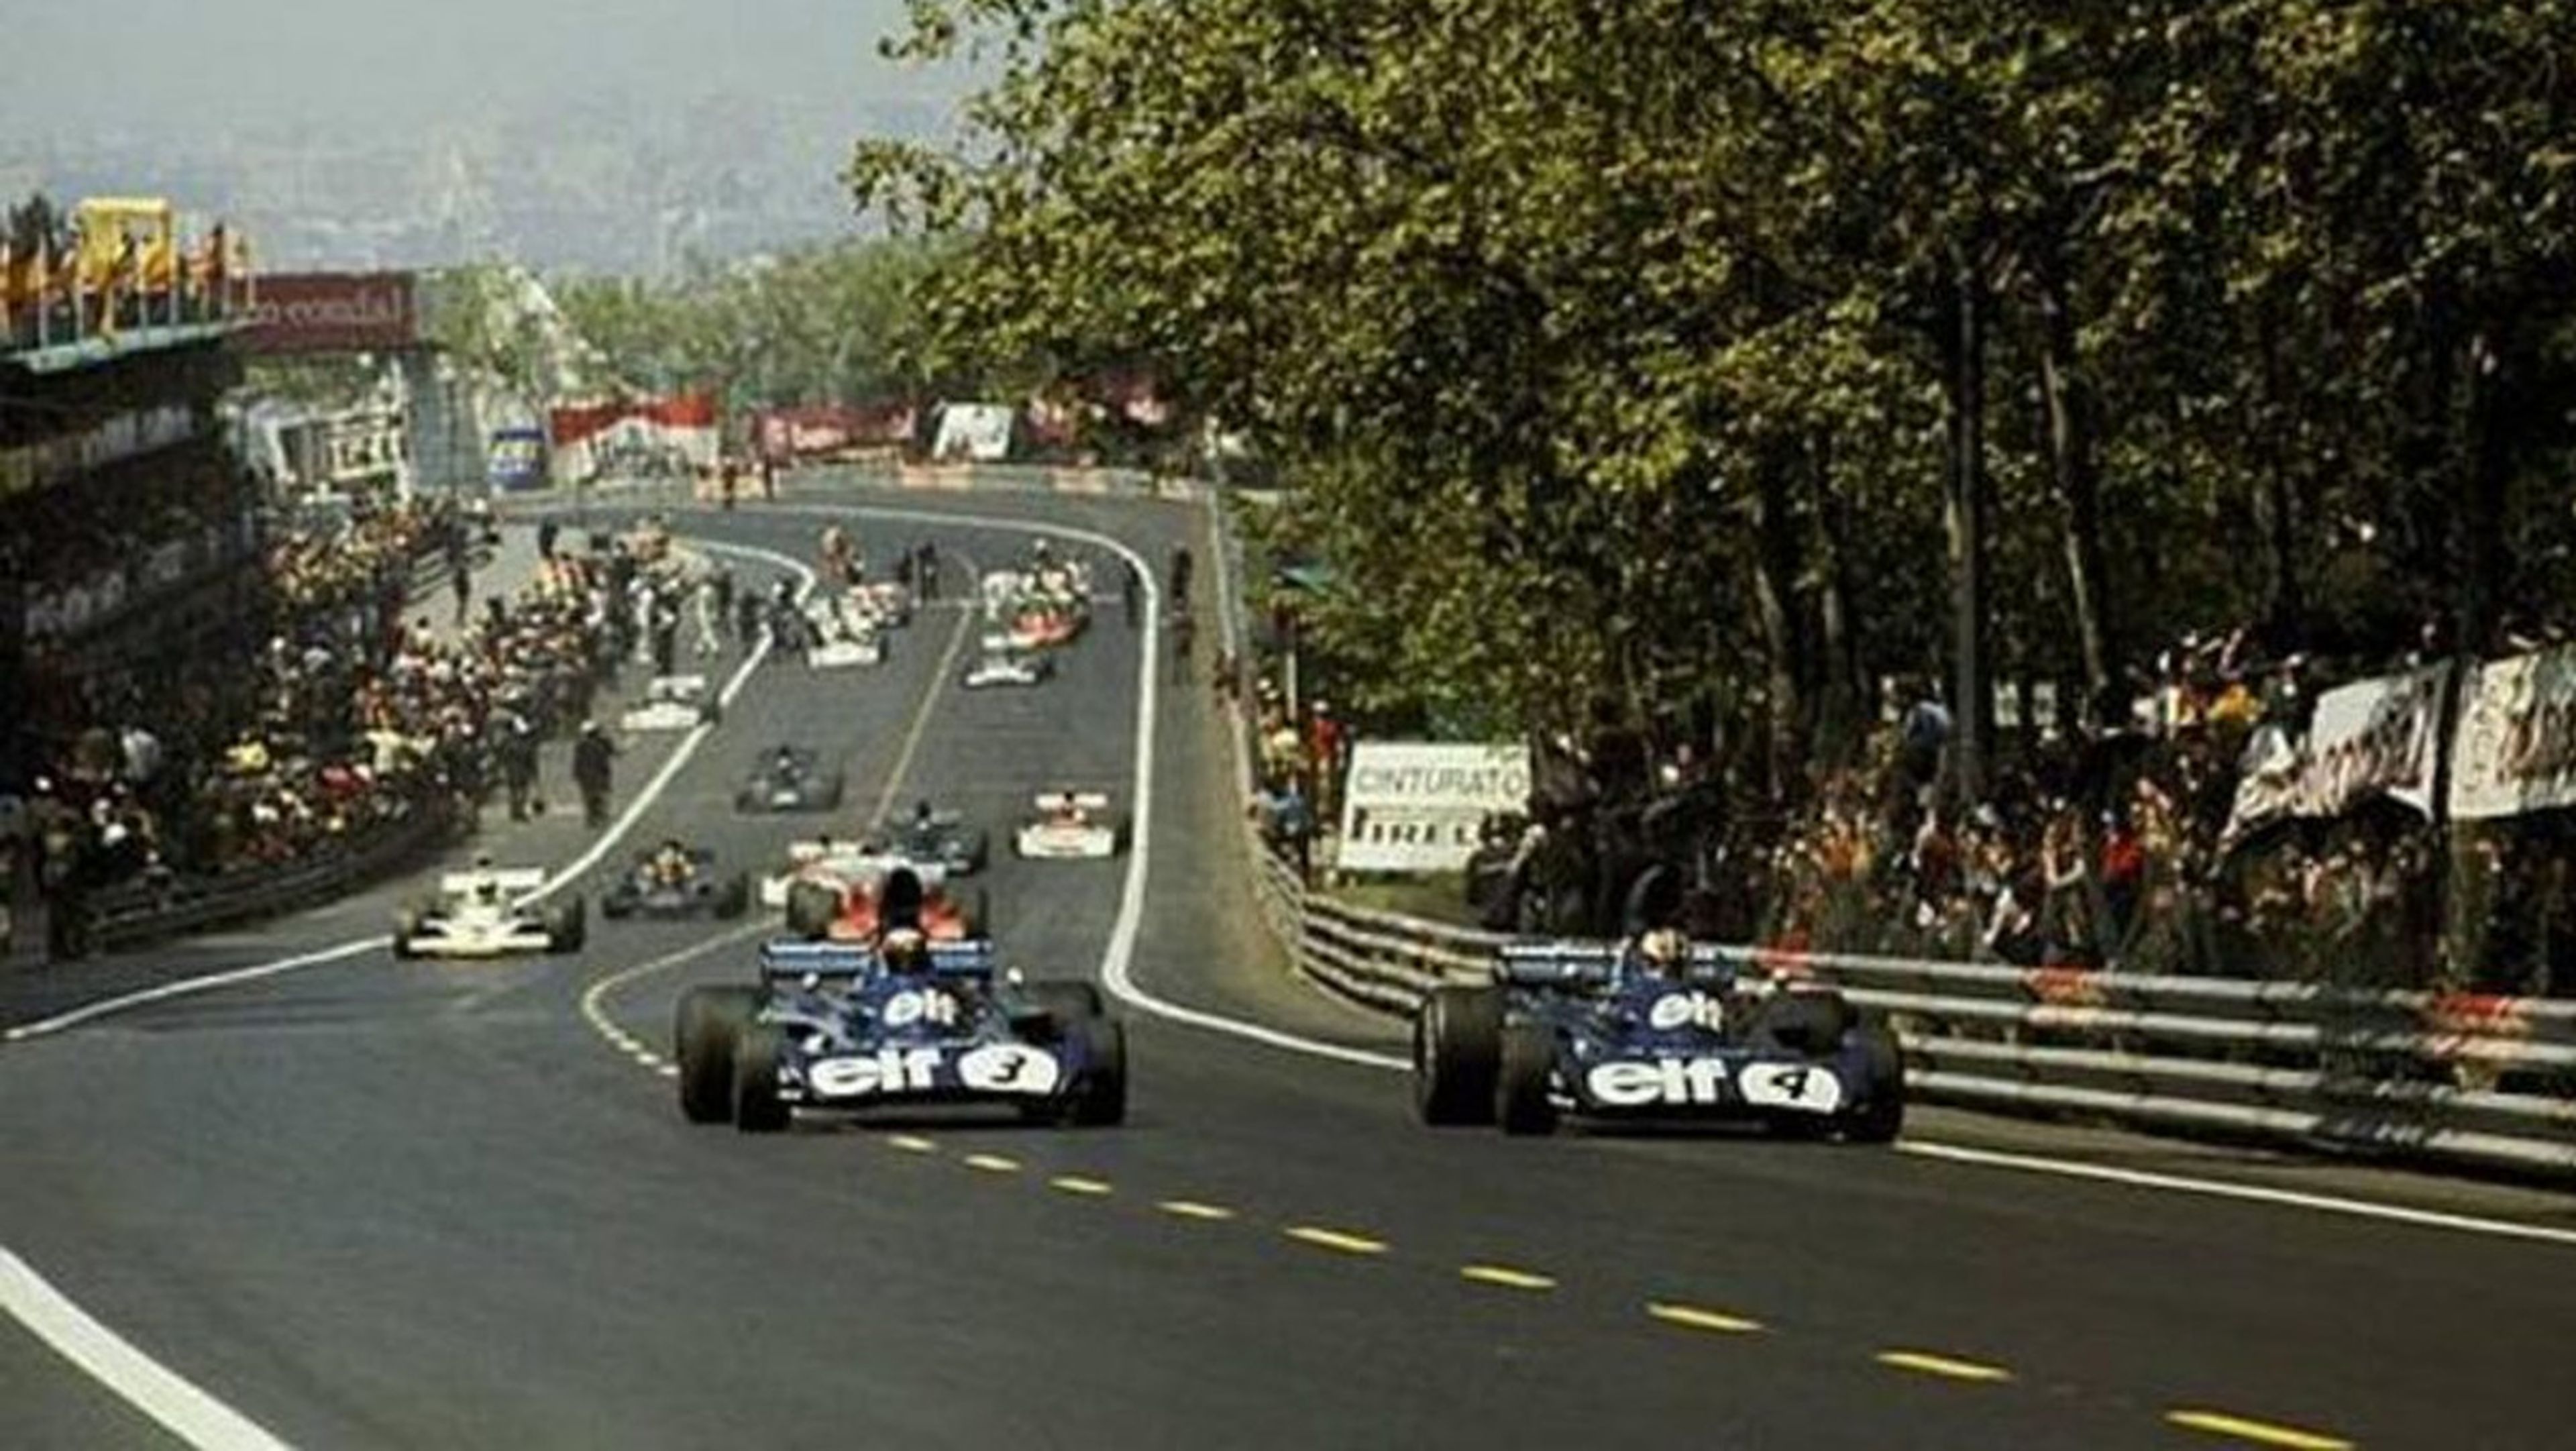 El GP de España 1975 disputado en Montjuic (Barcelona) única carrera en la que puntuó una mujer